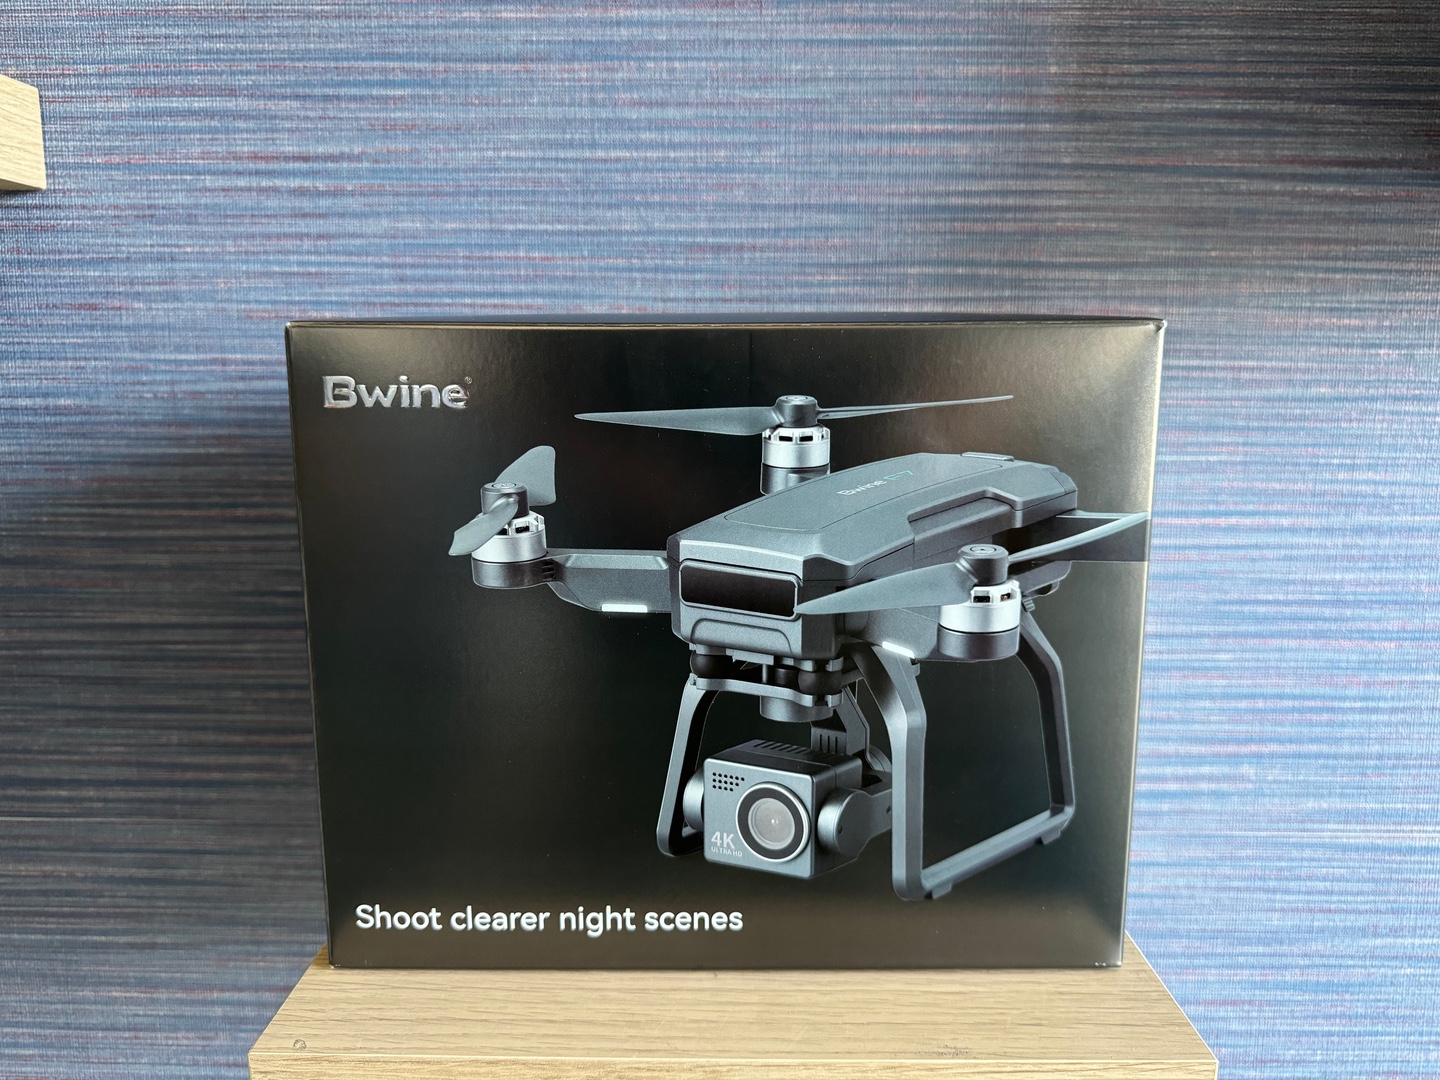 accesorios para electronica - Drone Bwine F7GB2 Nuevo Sellado Completo + EXTRAS!!, RD$ 25,500 NEG 0